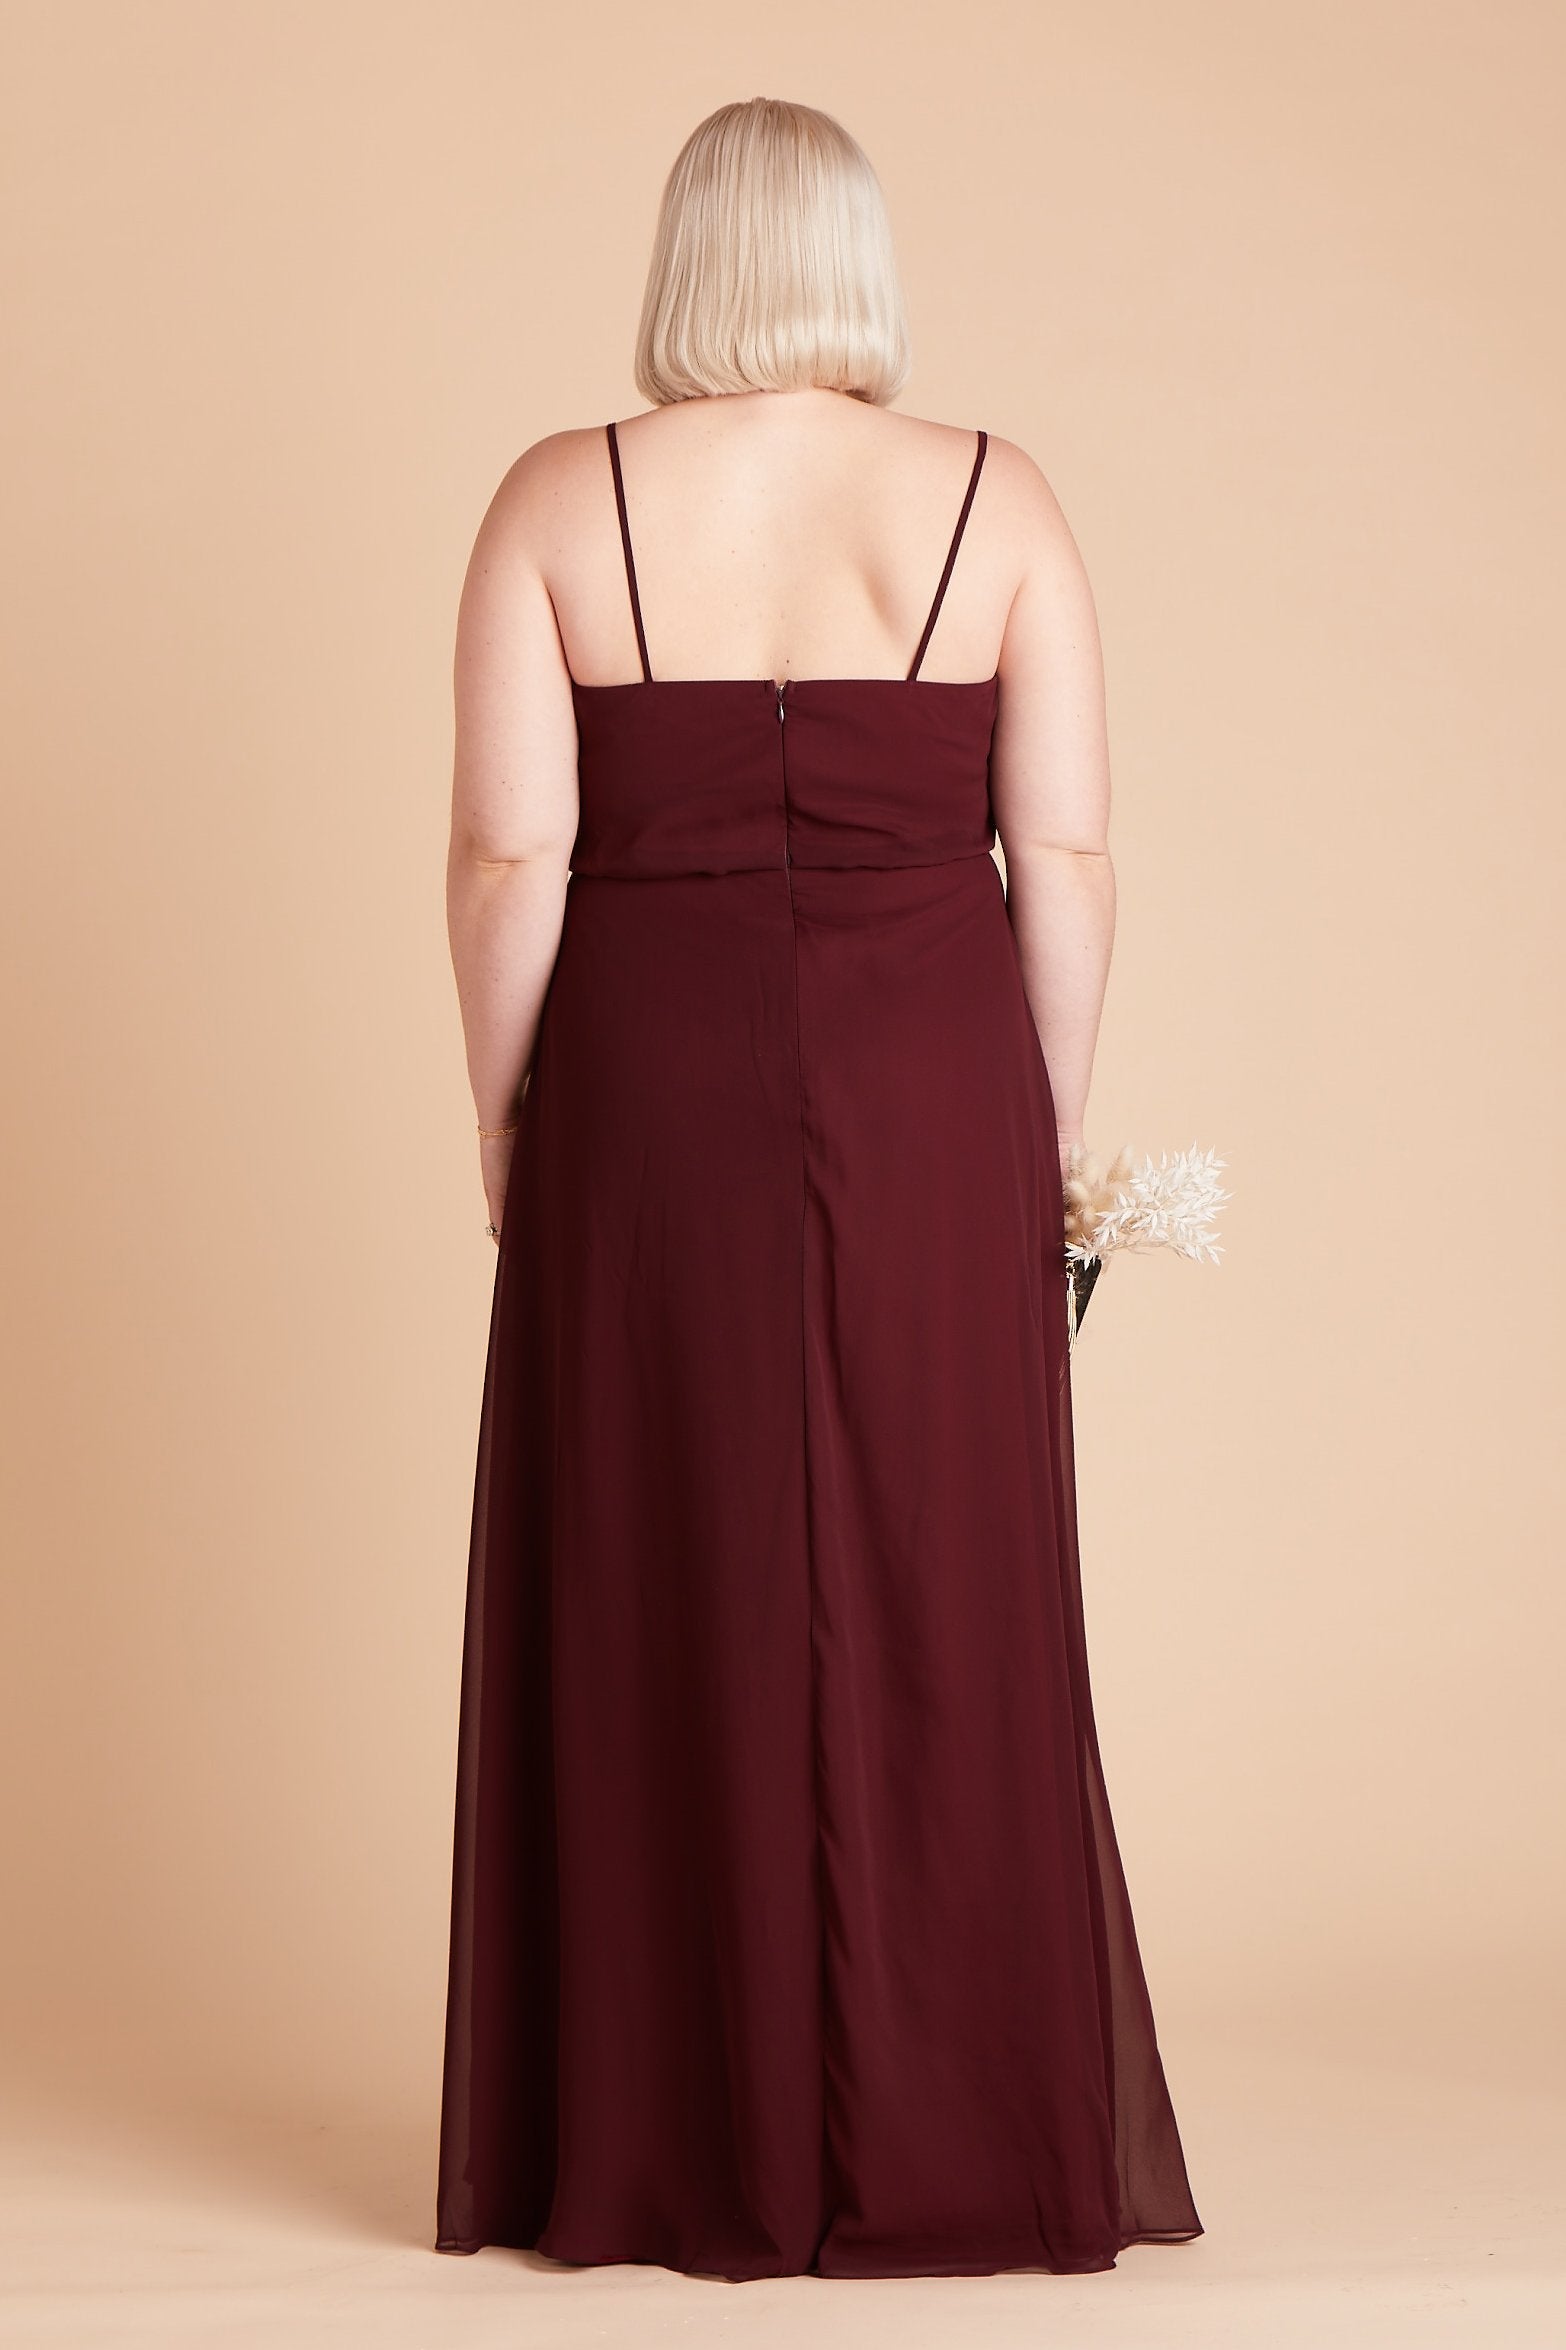 Gwennie plus size bridesmaid dress in cabernet burgundy chiffon by Birdy Grey, back view